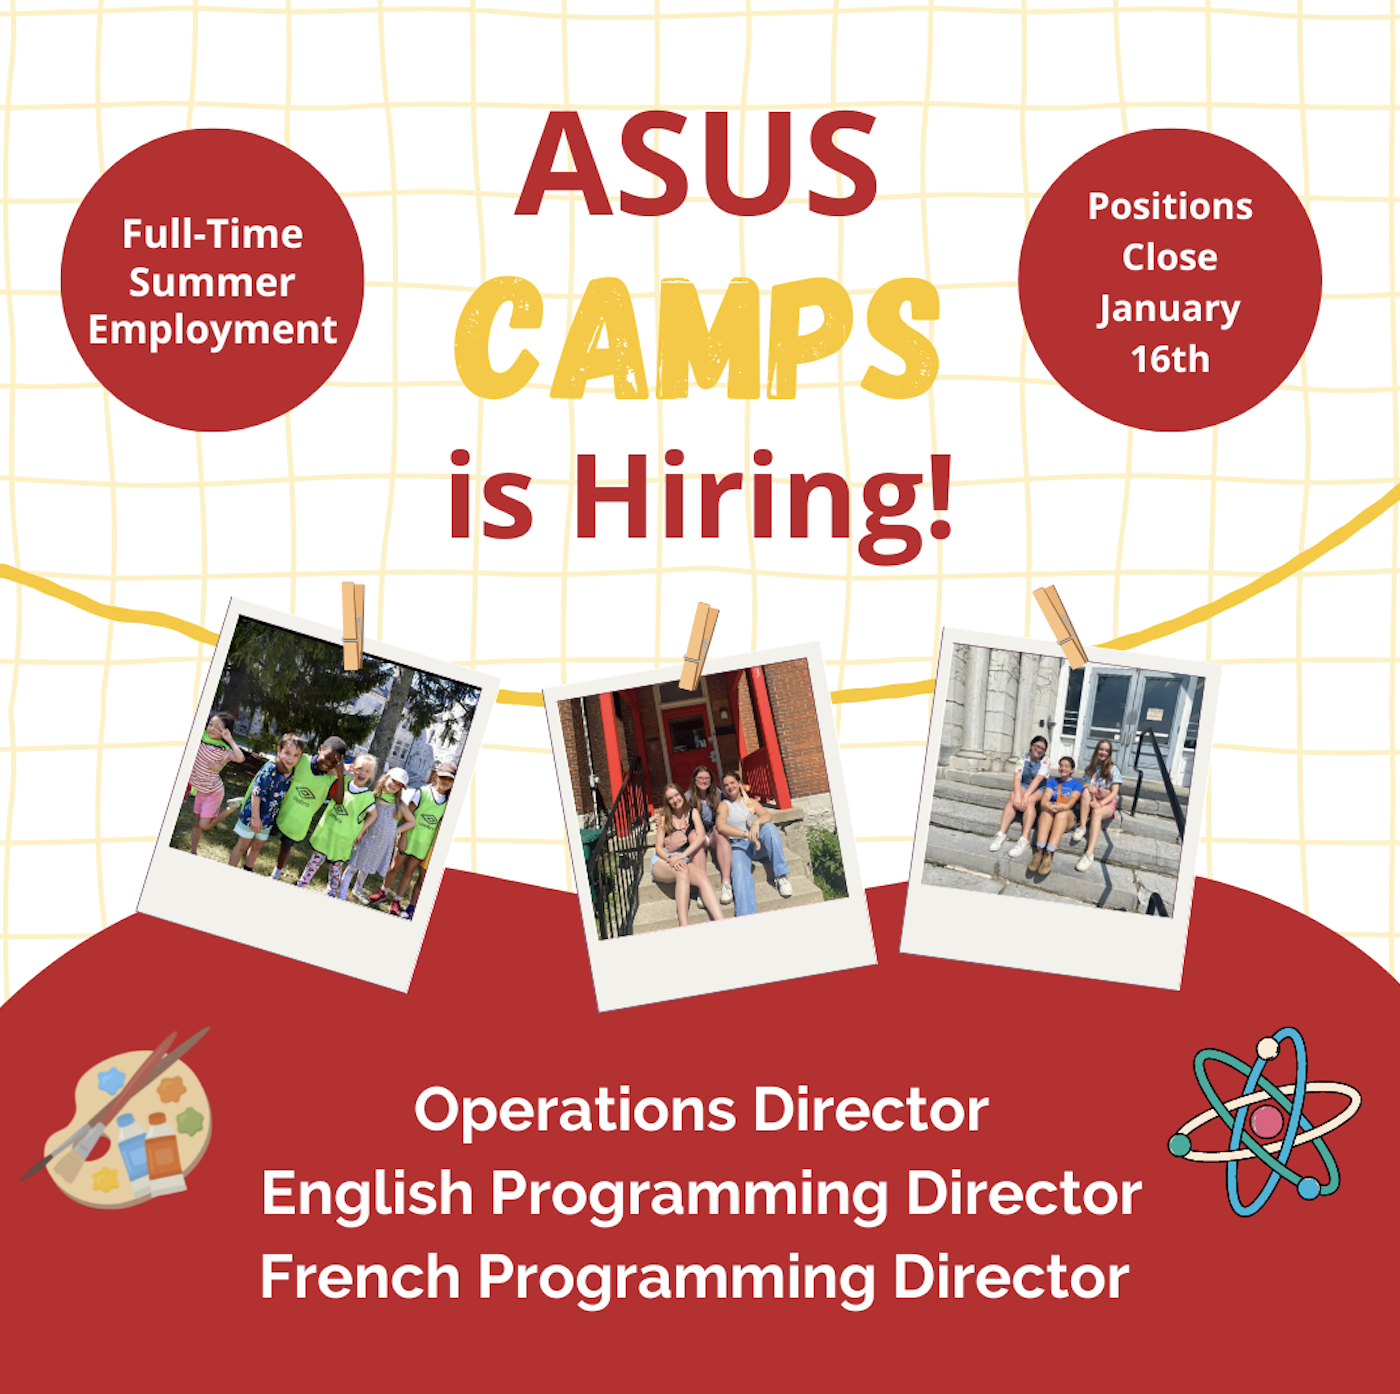 ASUS camps job ad